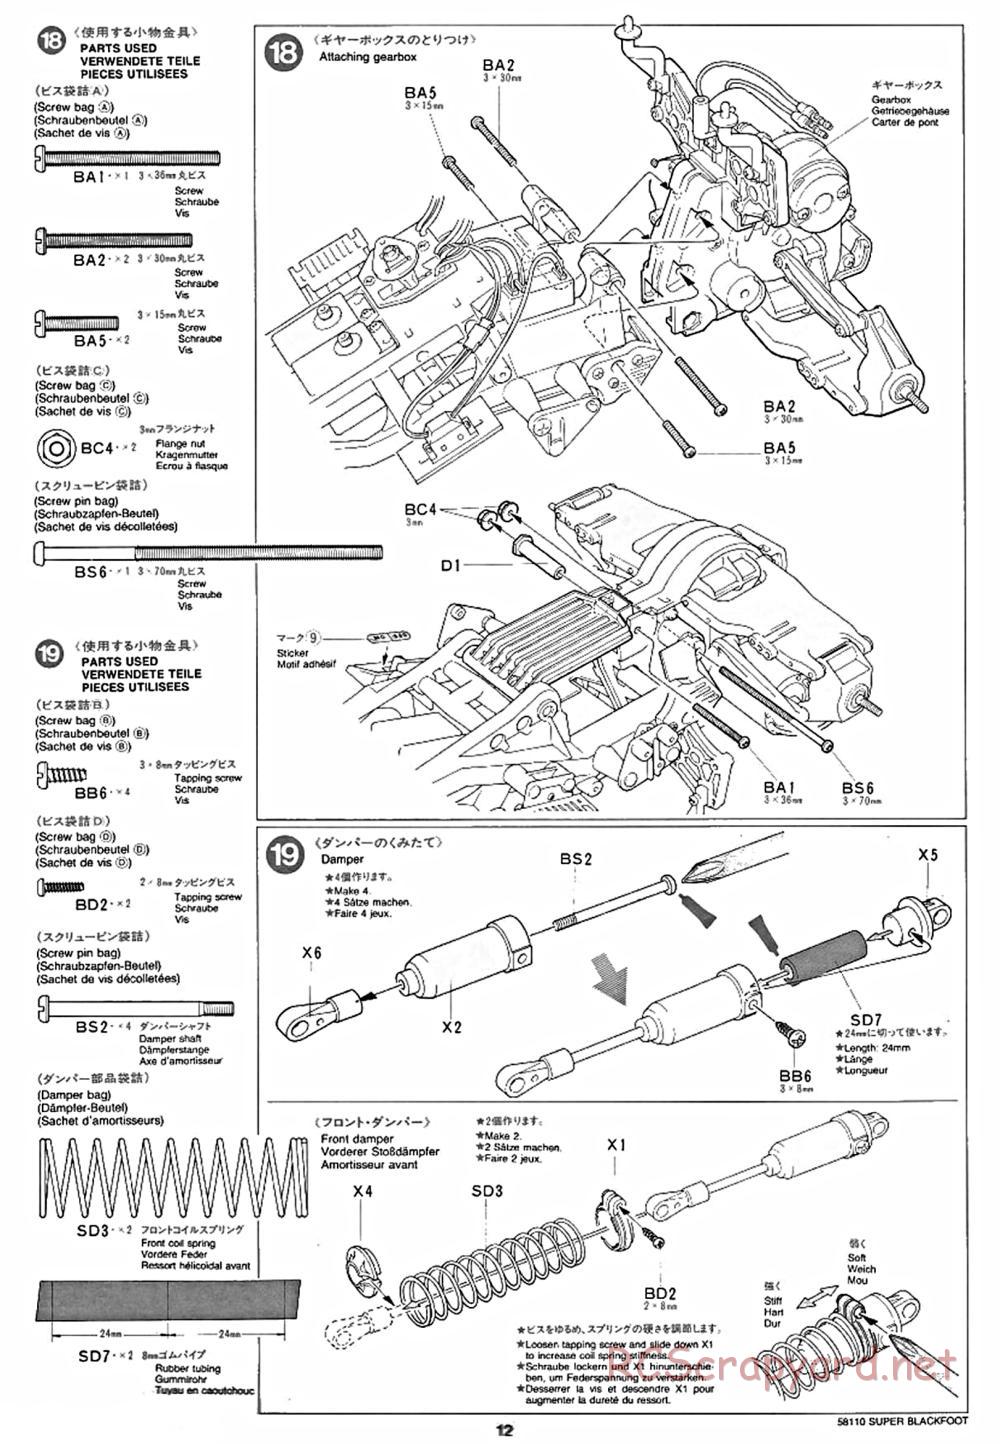 Tamiya - Super Blackfoot Chassis - Manual - Page 12